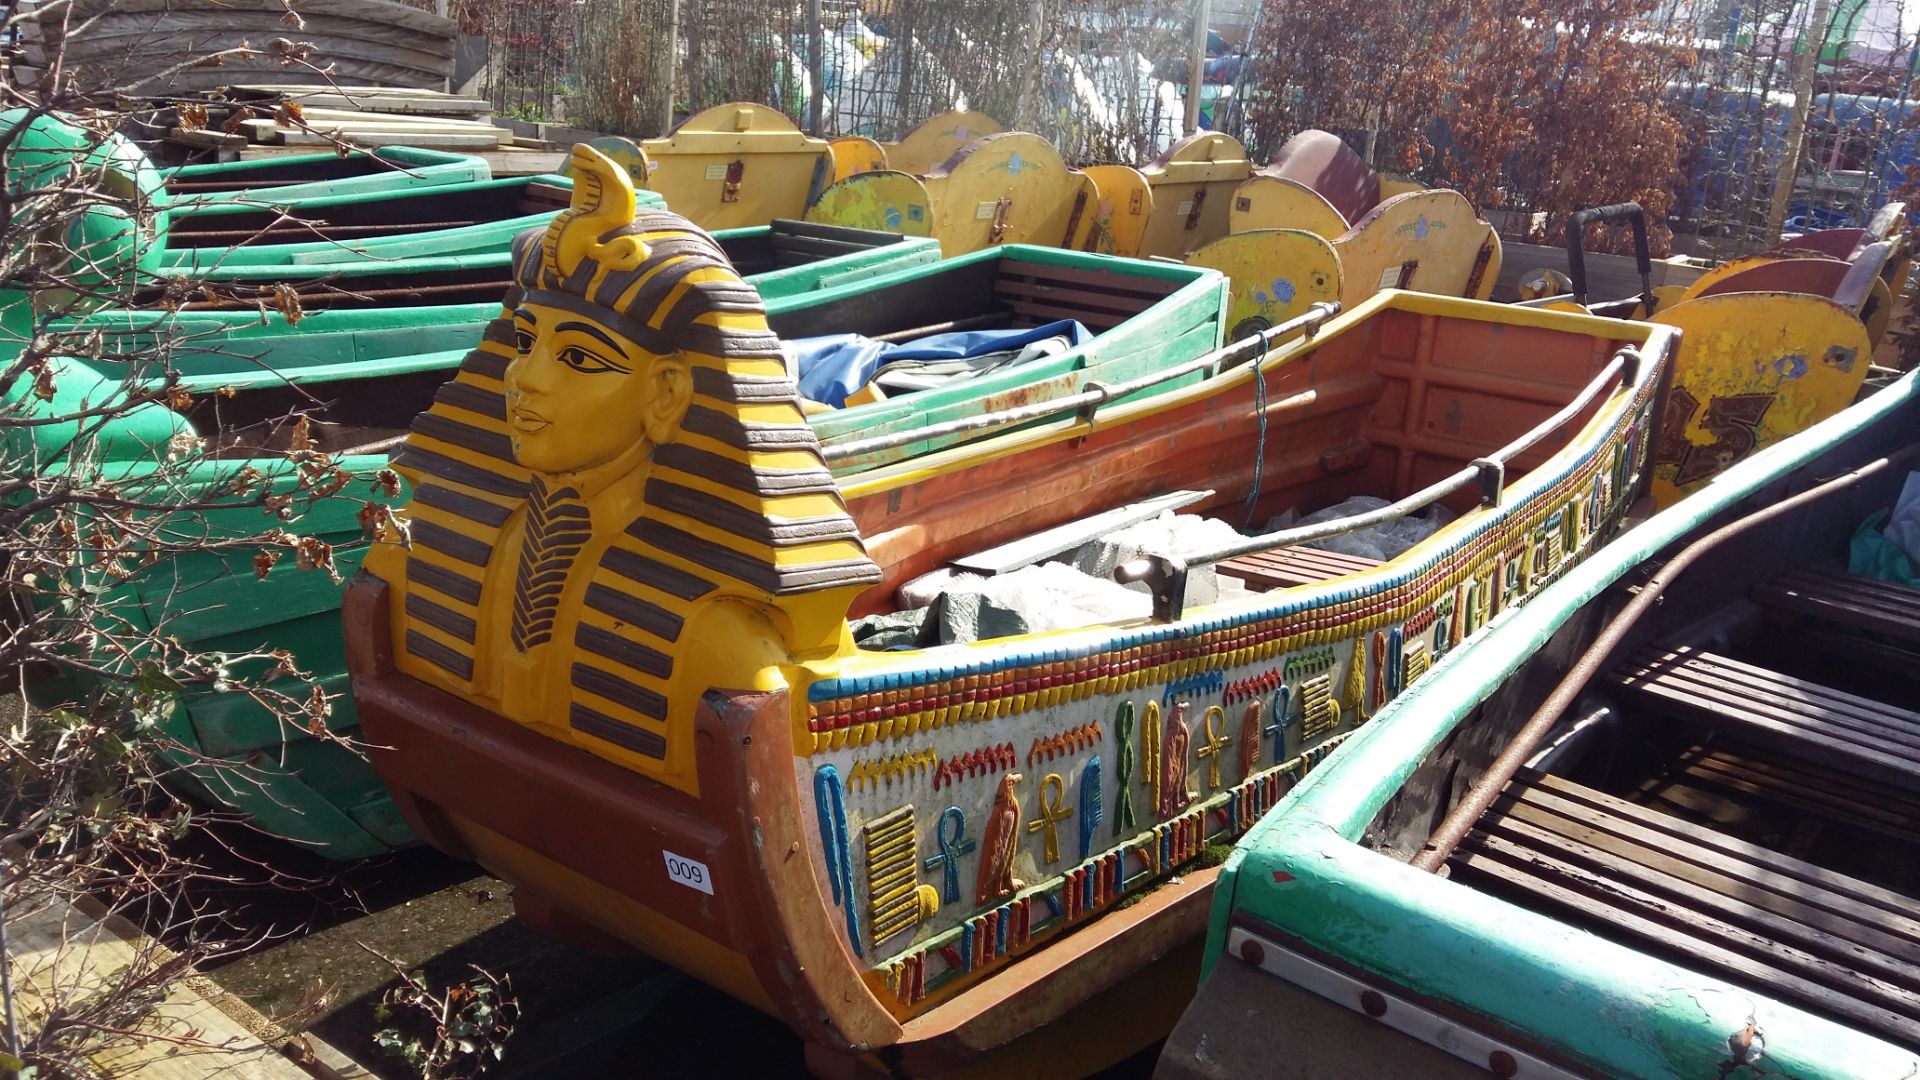 Wooden 'Egyptian' log flume boat